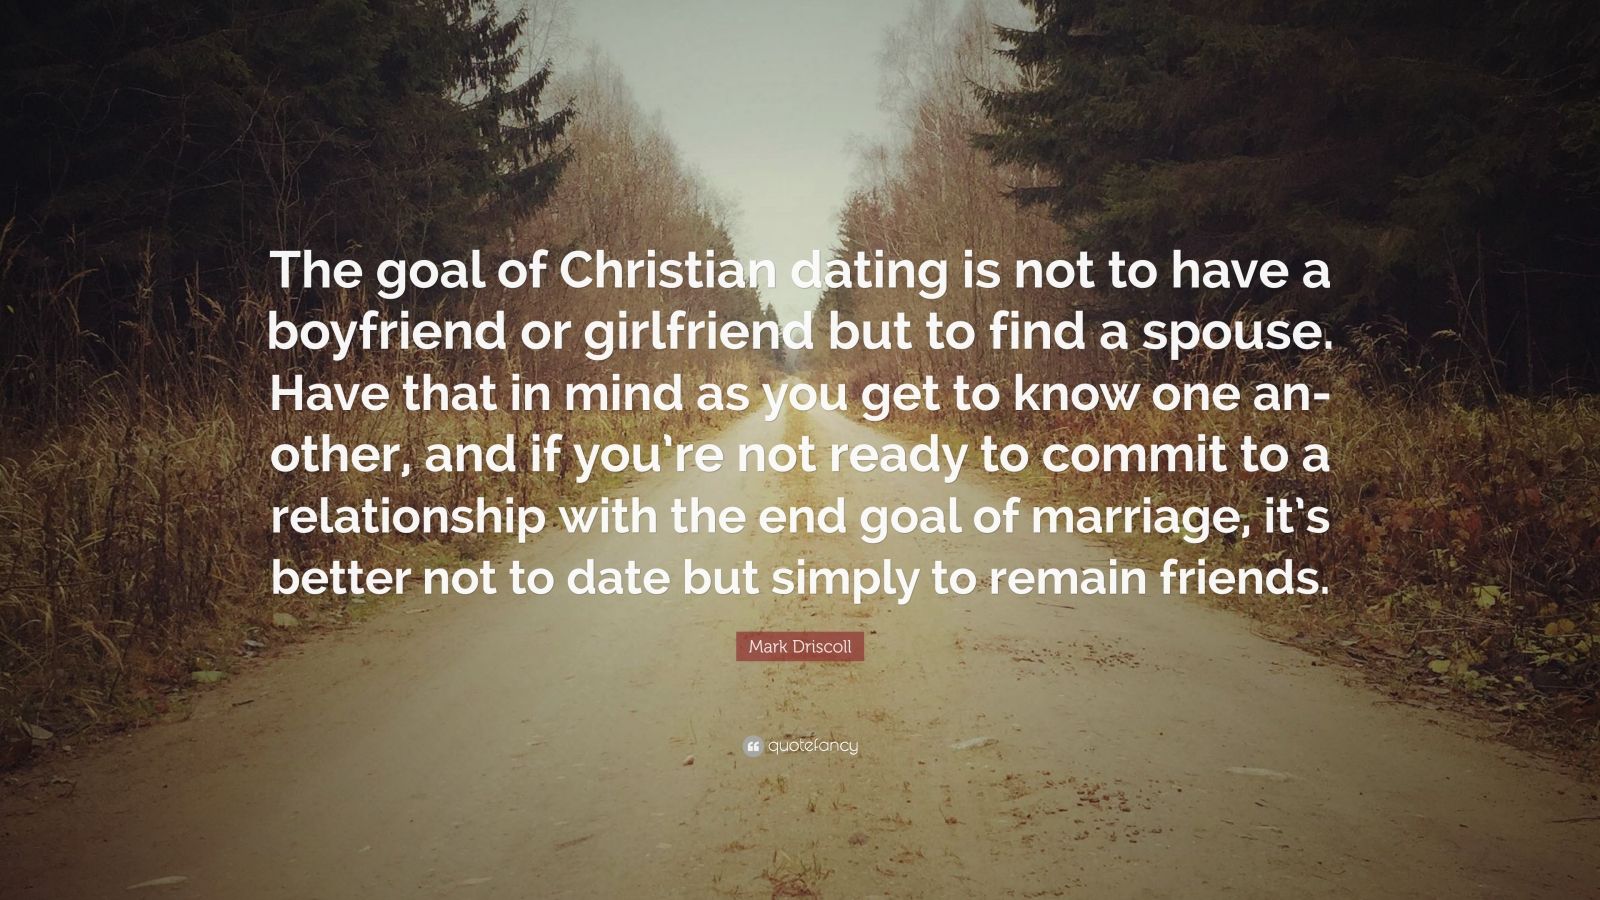 Christian dating a nicht christian